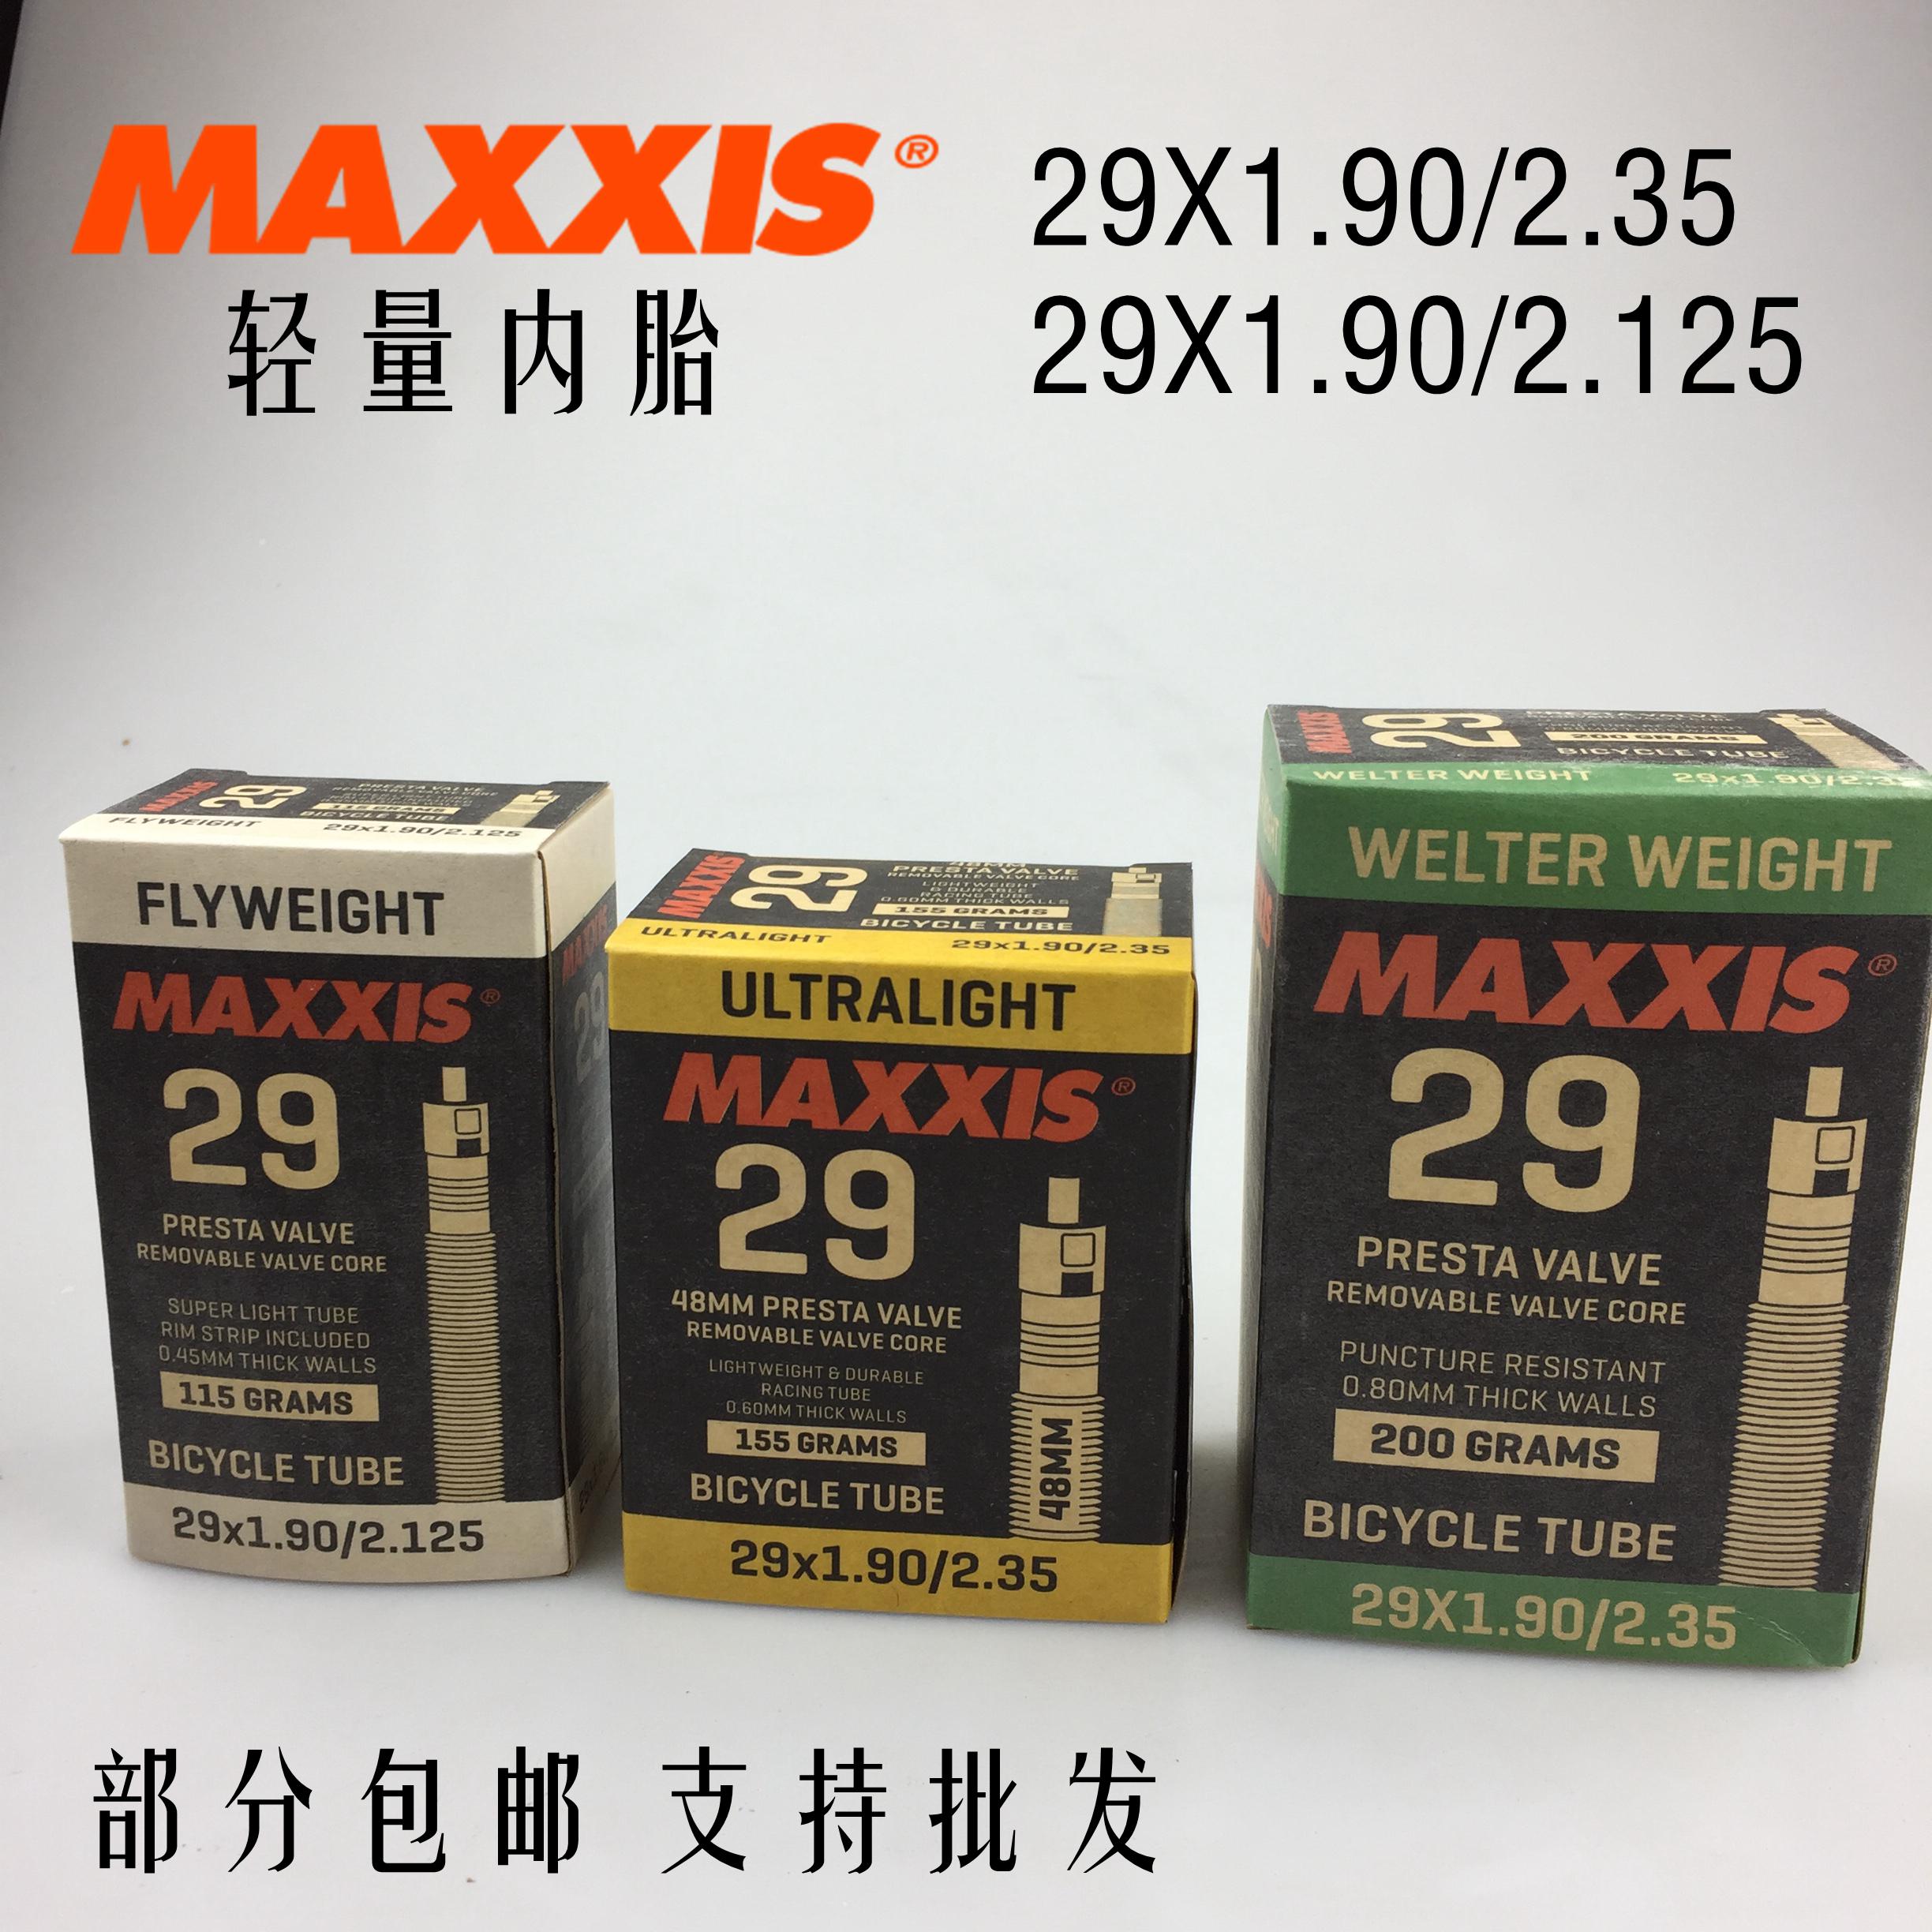 maxxis flyweight mtb tube 29